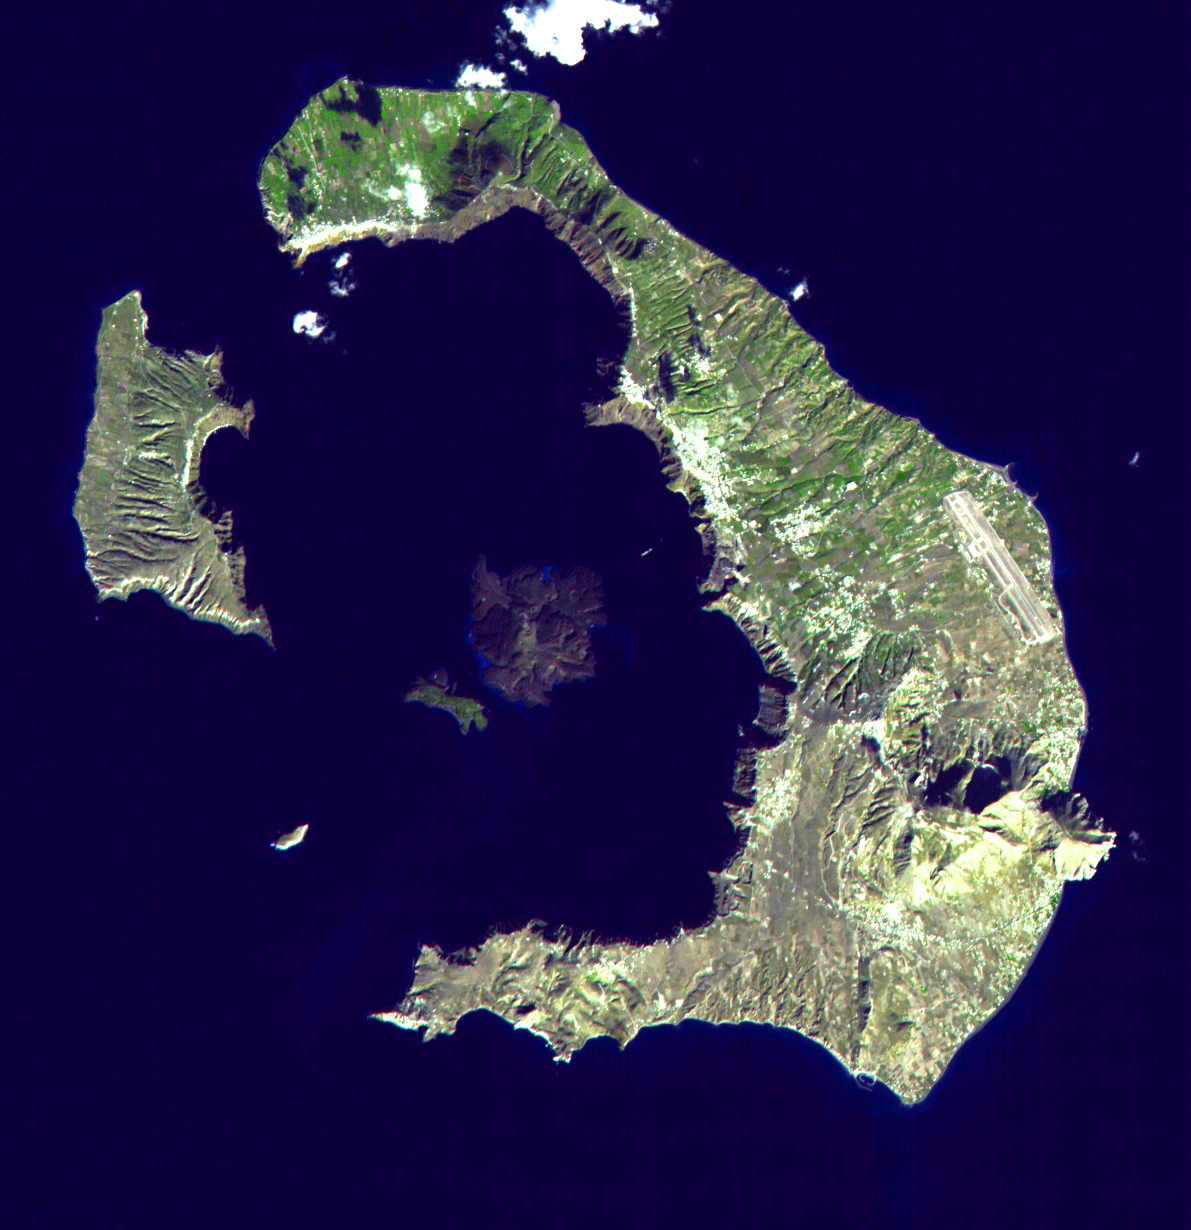 Caldera von Thera (heute Santorini) in Griechenland mi einem Durchmesser von 11 Kilometern in Nord-Süd-Richtung und 9 Kilometern in Ost-West-Richtung.   © Wikicommons / EOS / NASA